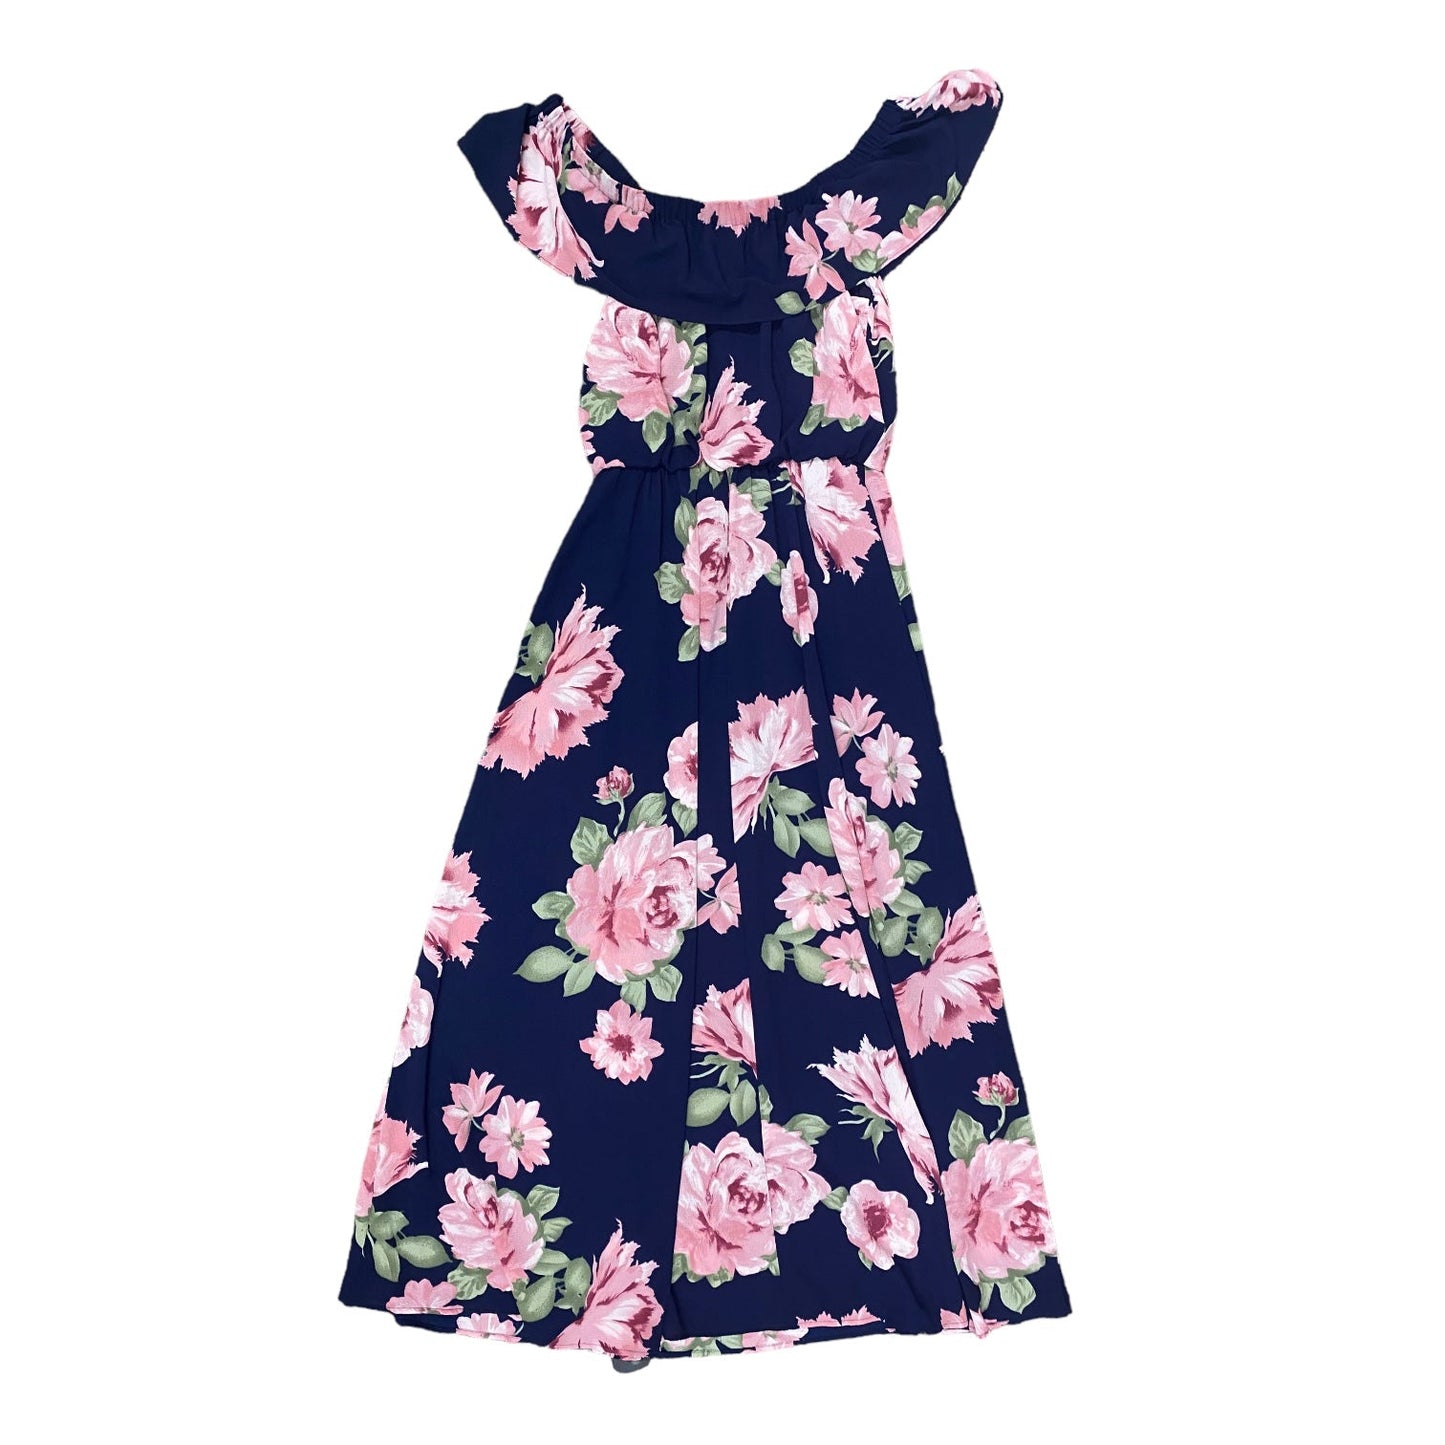 Floral Print Dress Casual Maxi PREMIER AMOUR, Size 14